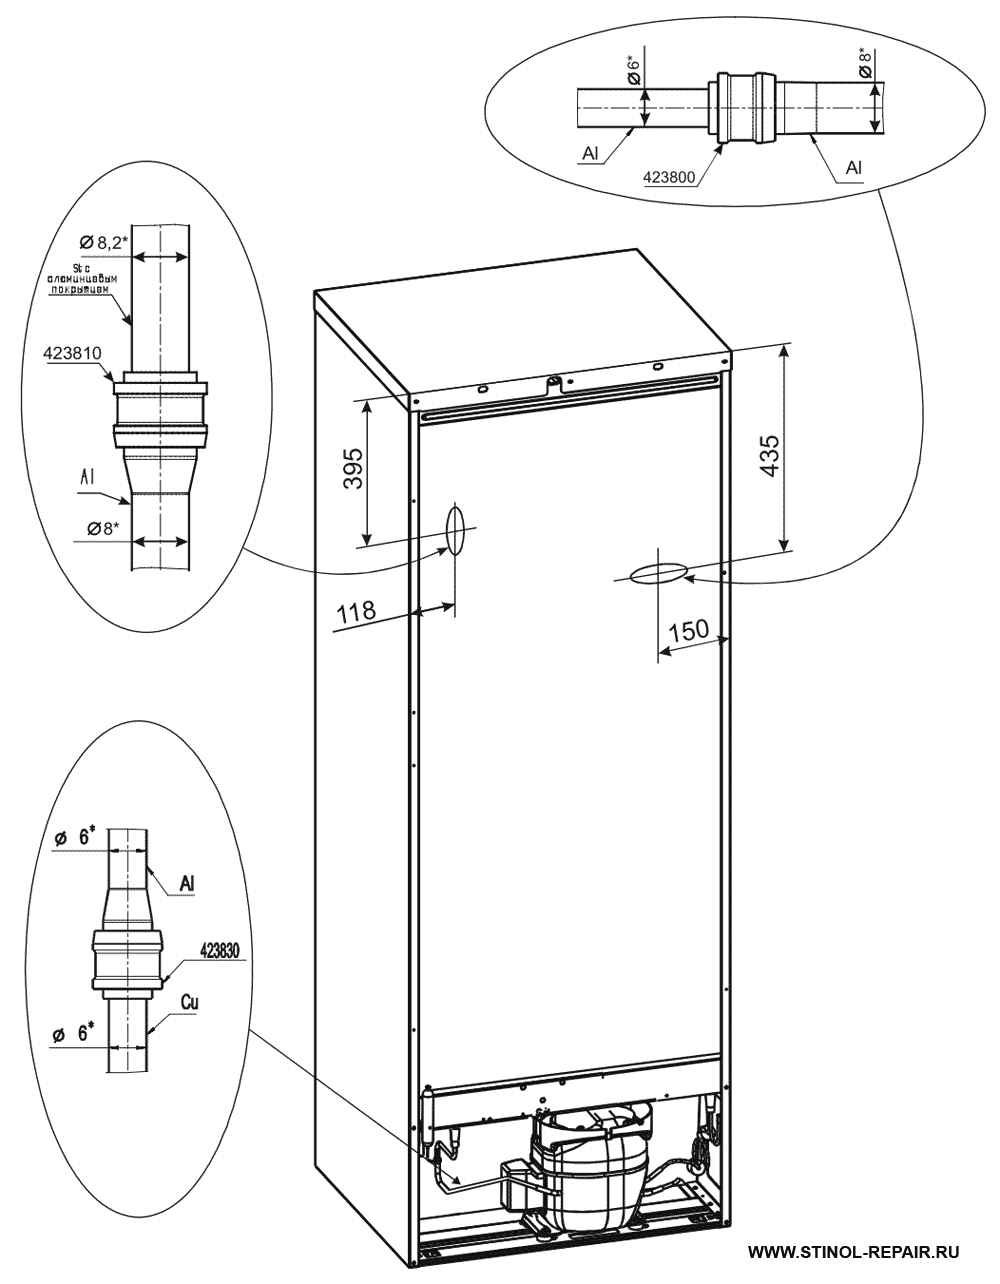 Расположение локринговых соединений холодильника Стинол-205Q - второй вариант.